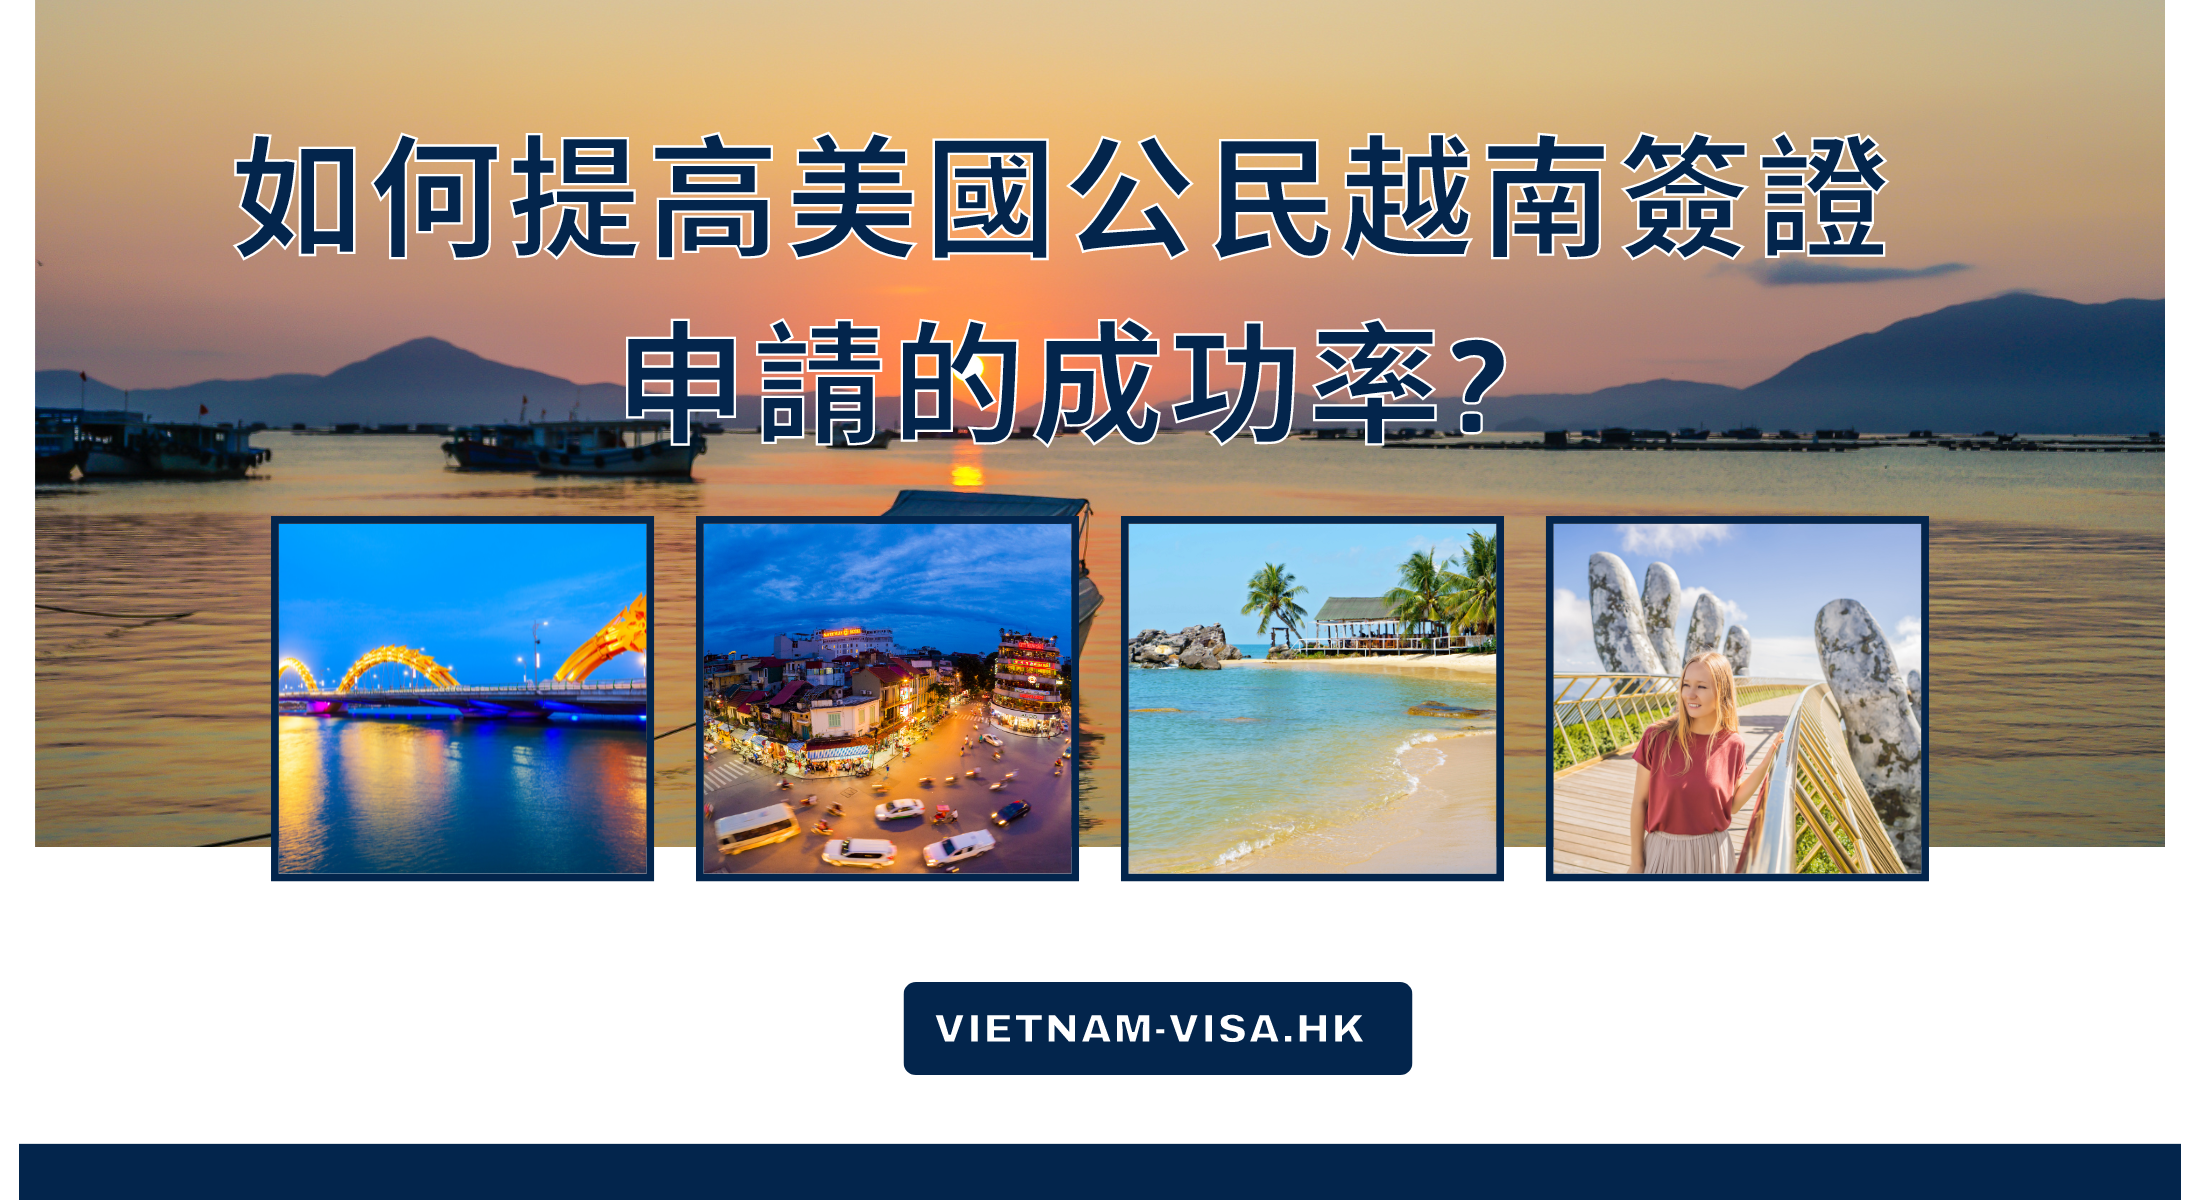 如何提高美國公民越南簽證申請的成功率?